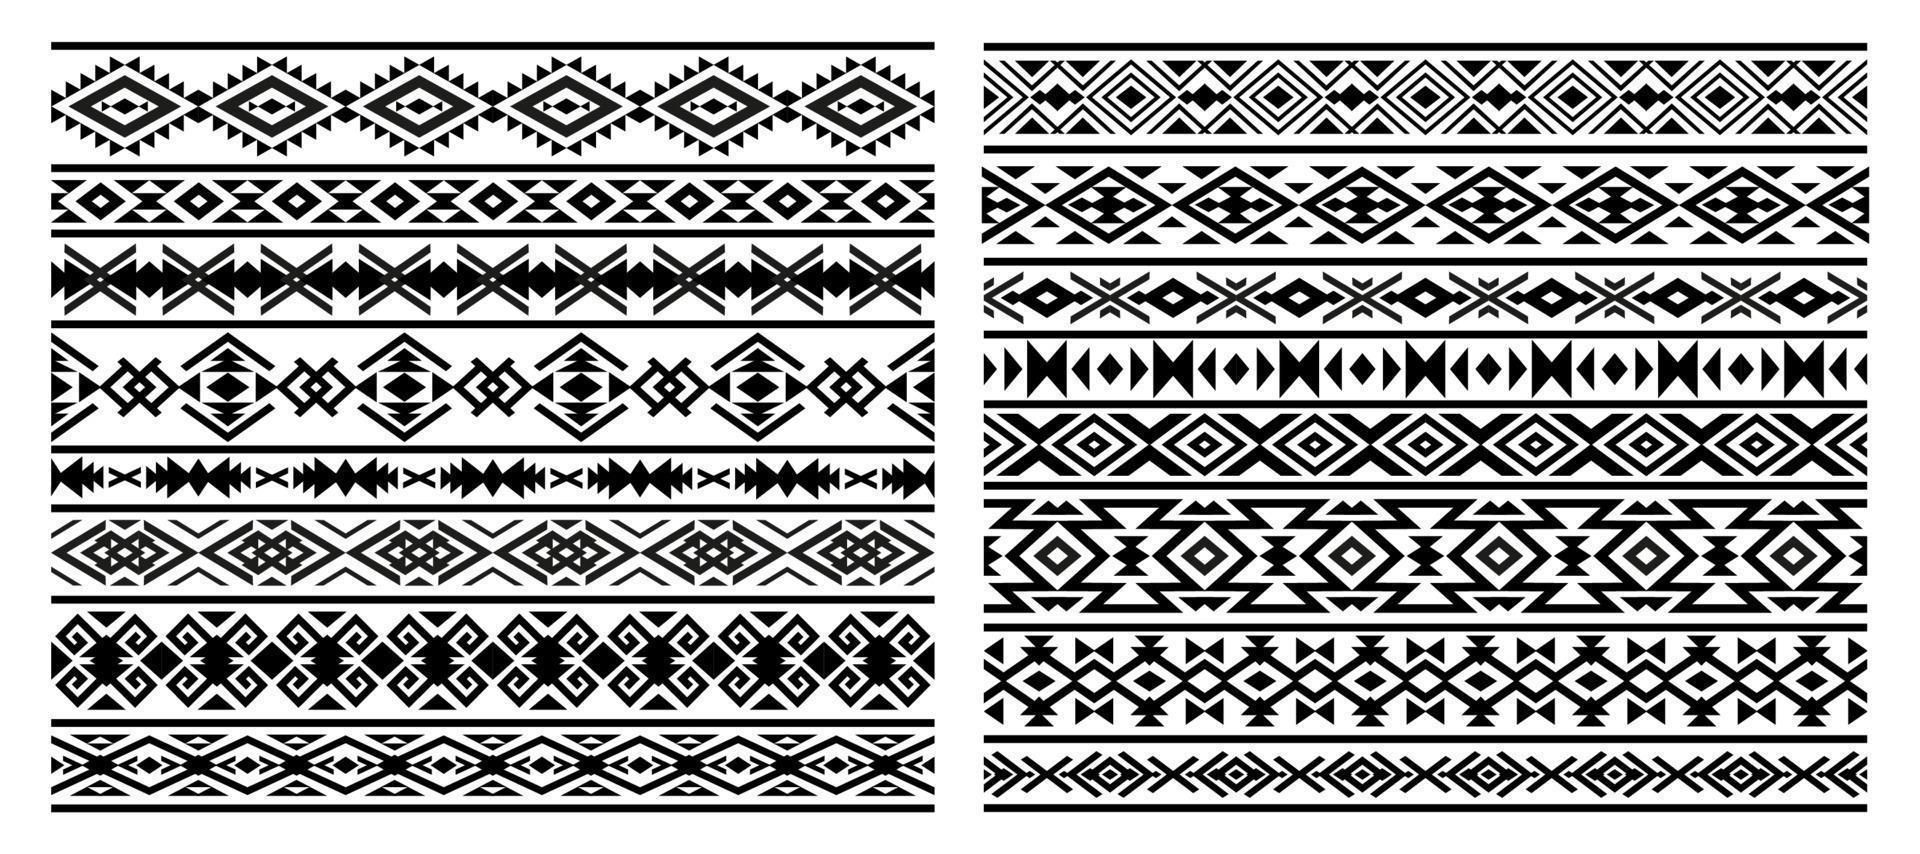 azteeks, mayan Mexicaans borders patronen, ornamenten vector